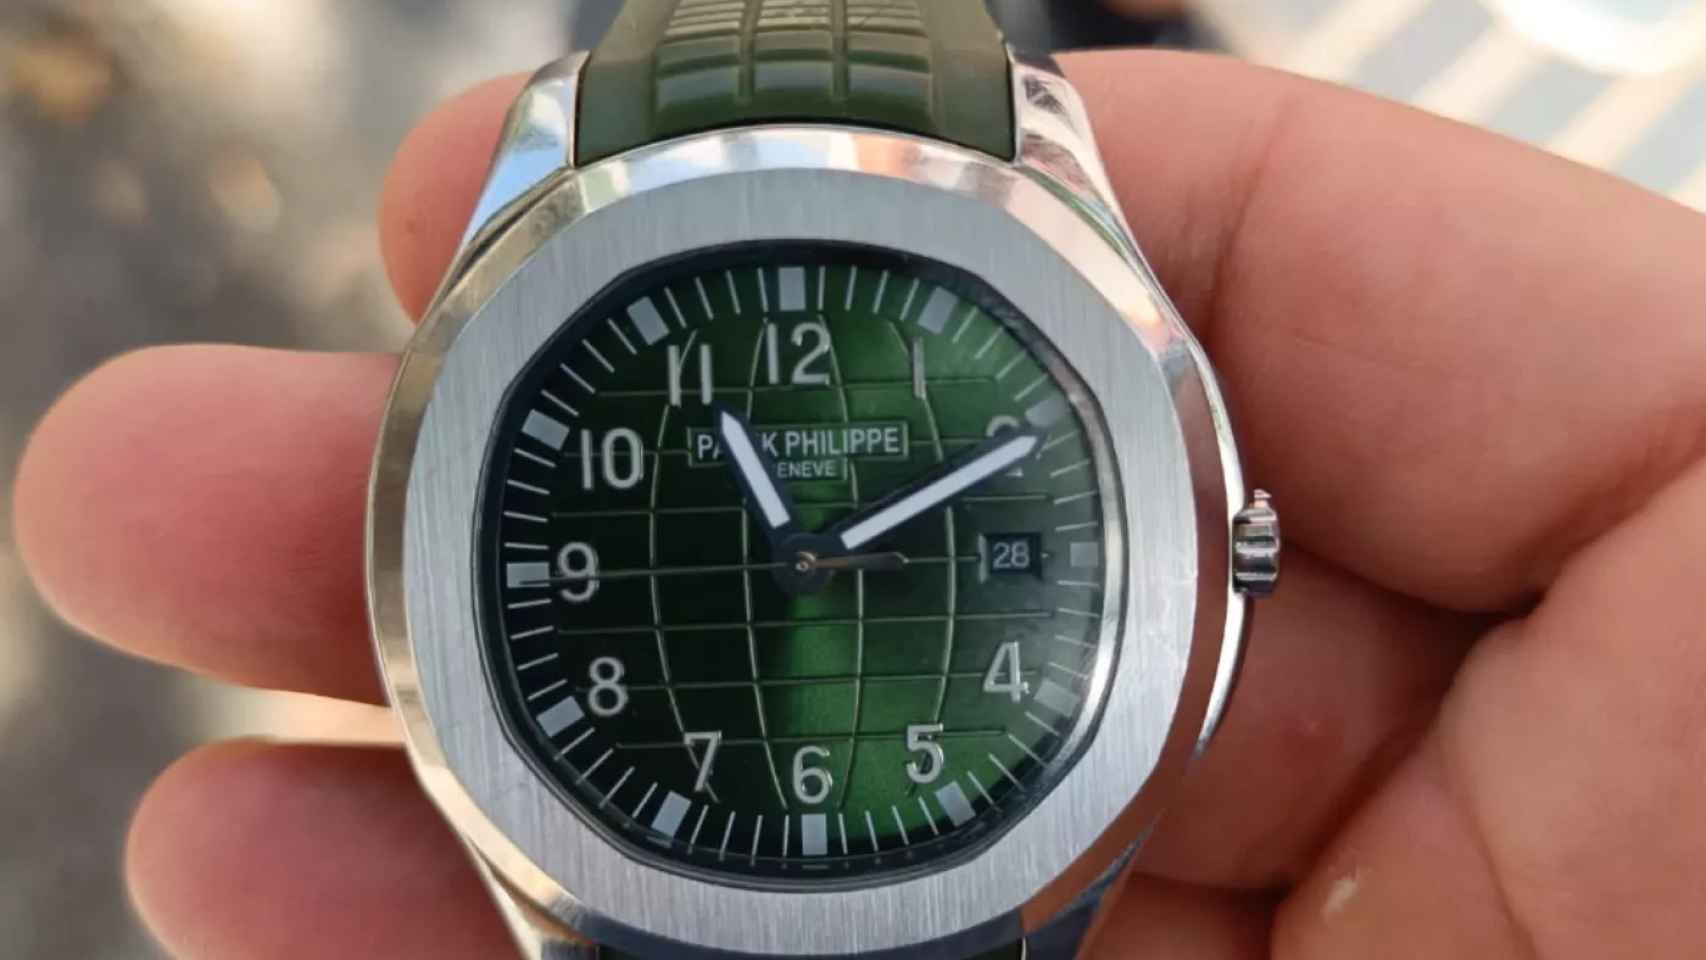 El reloj valorado en 60.000 euros que robaron en Barcelona / GUARDIA URBANA